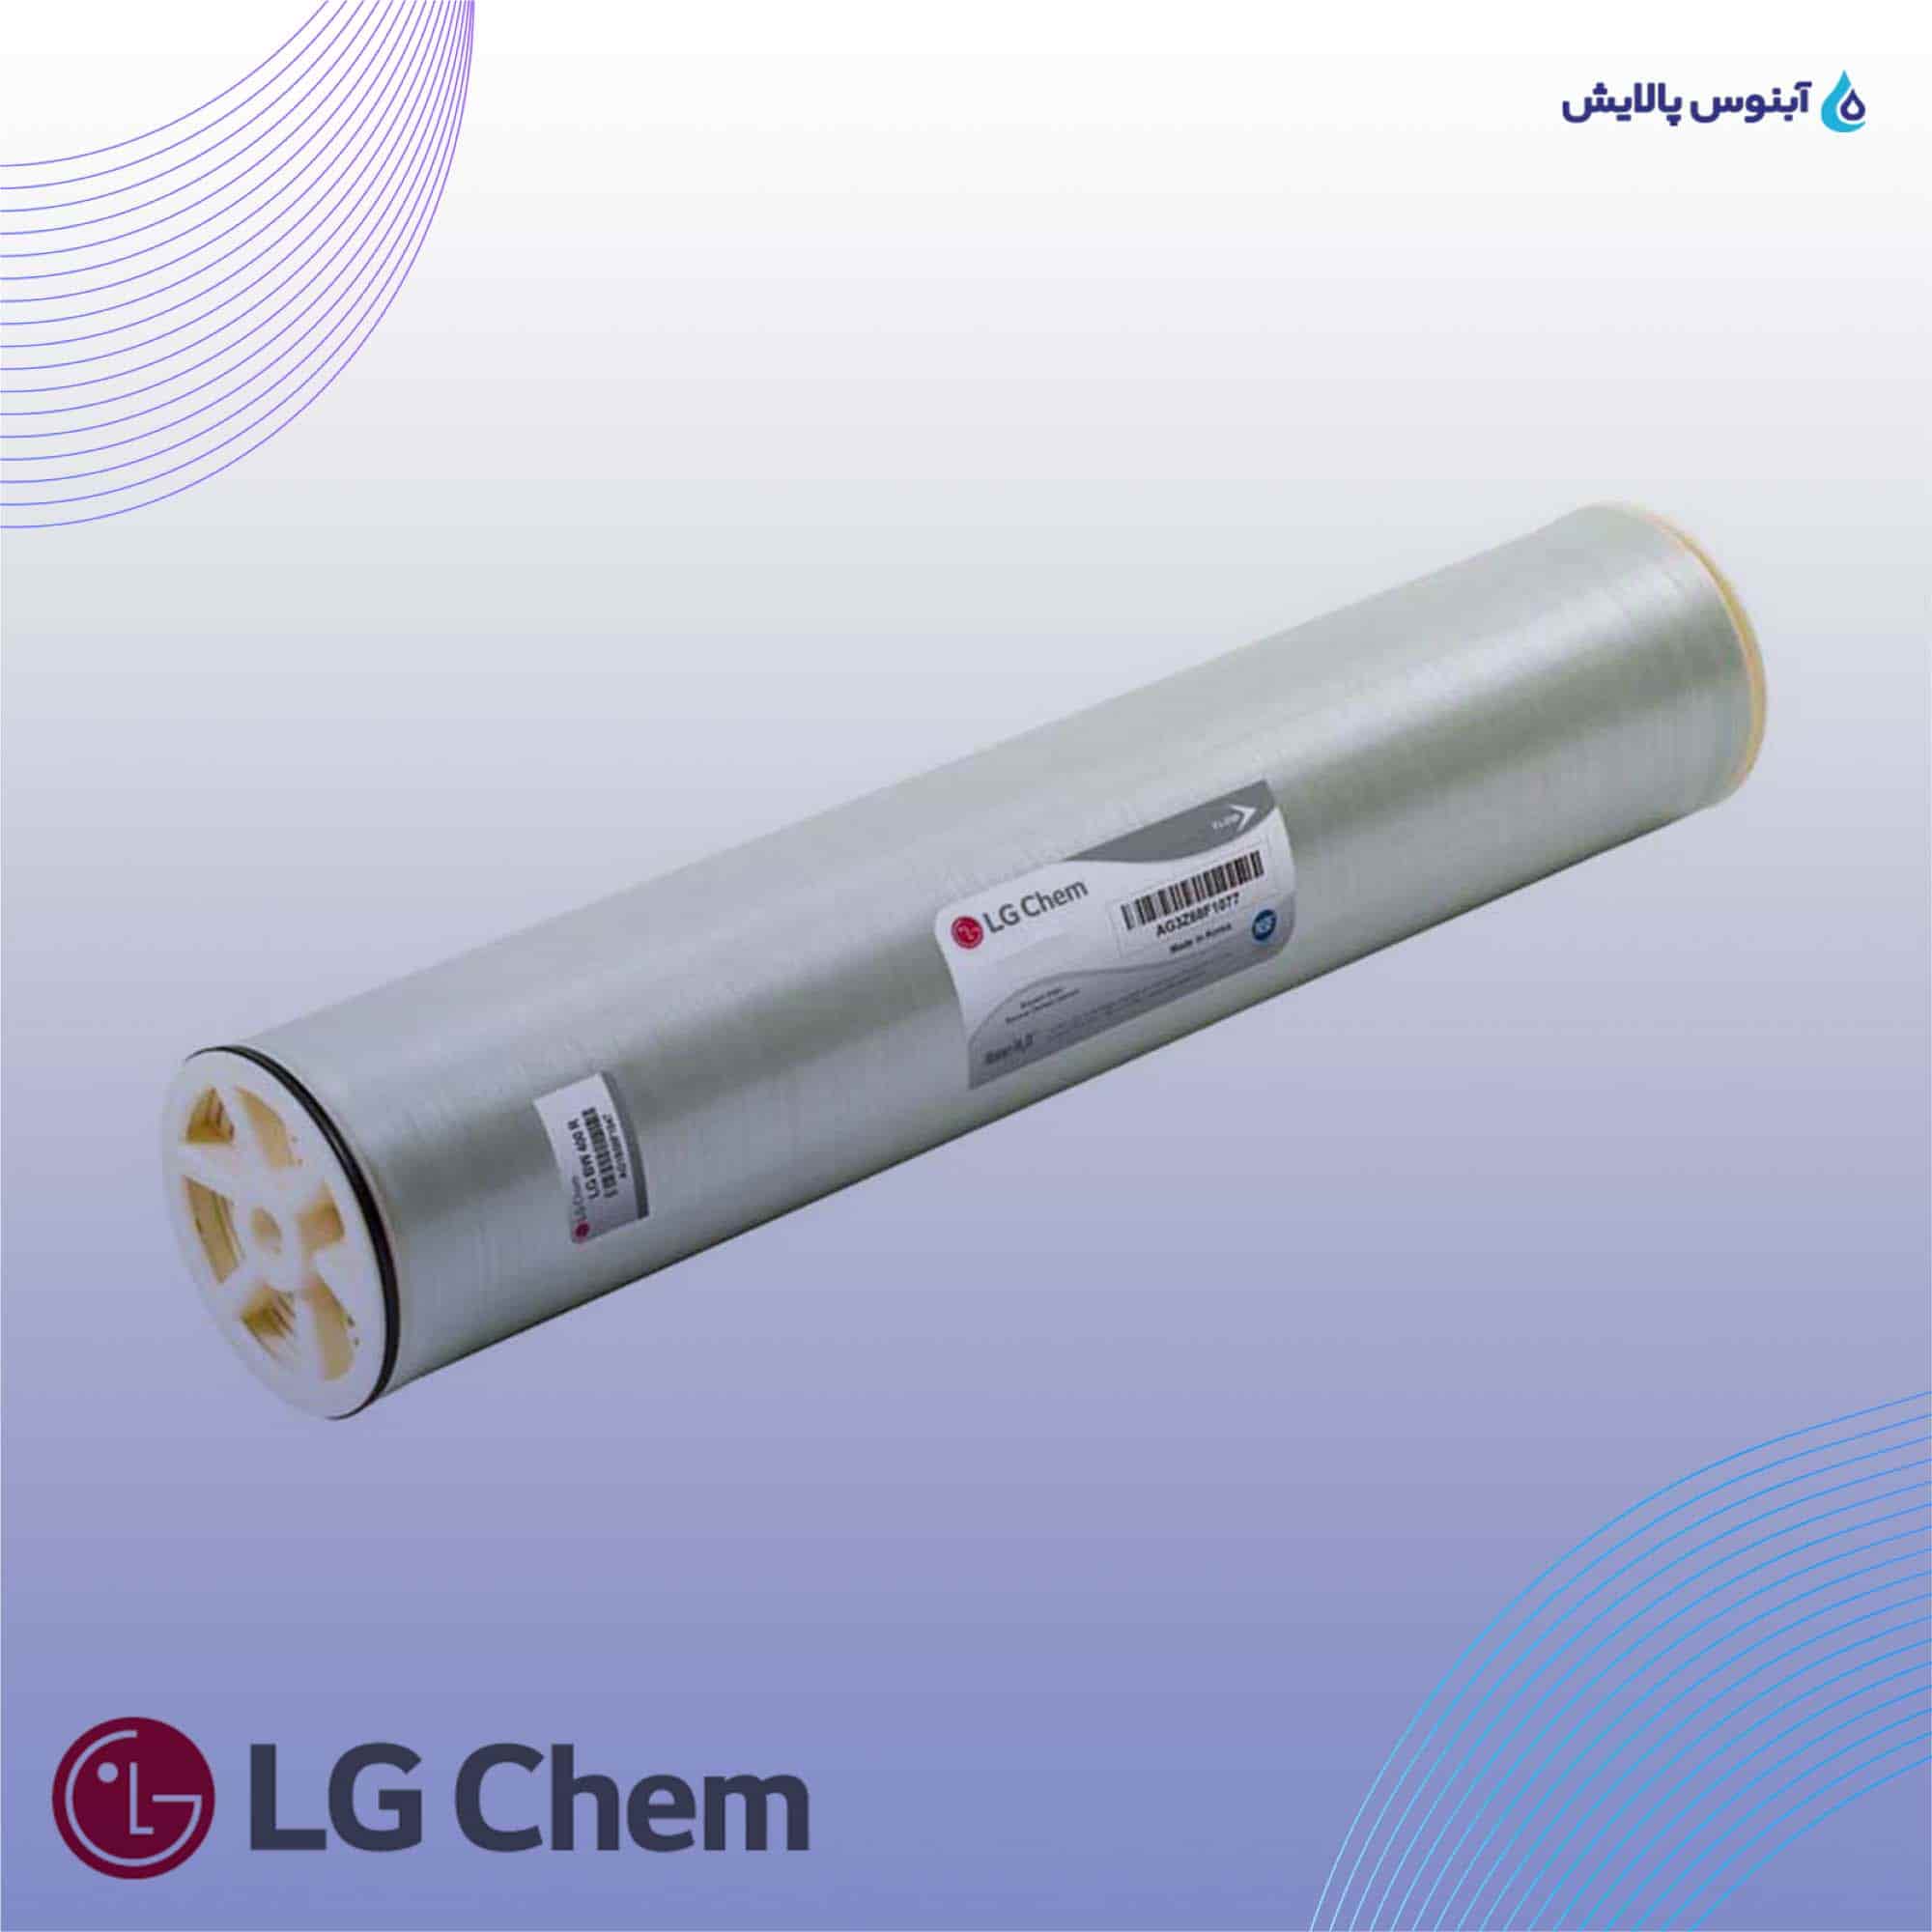 ممبران 8 اینچ ال جی کم (LG Chem) مدل LG BW 440 R G2